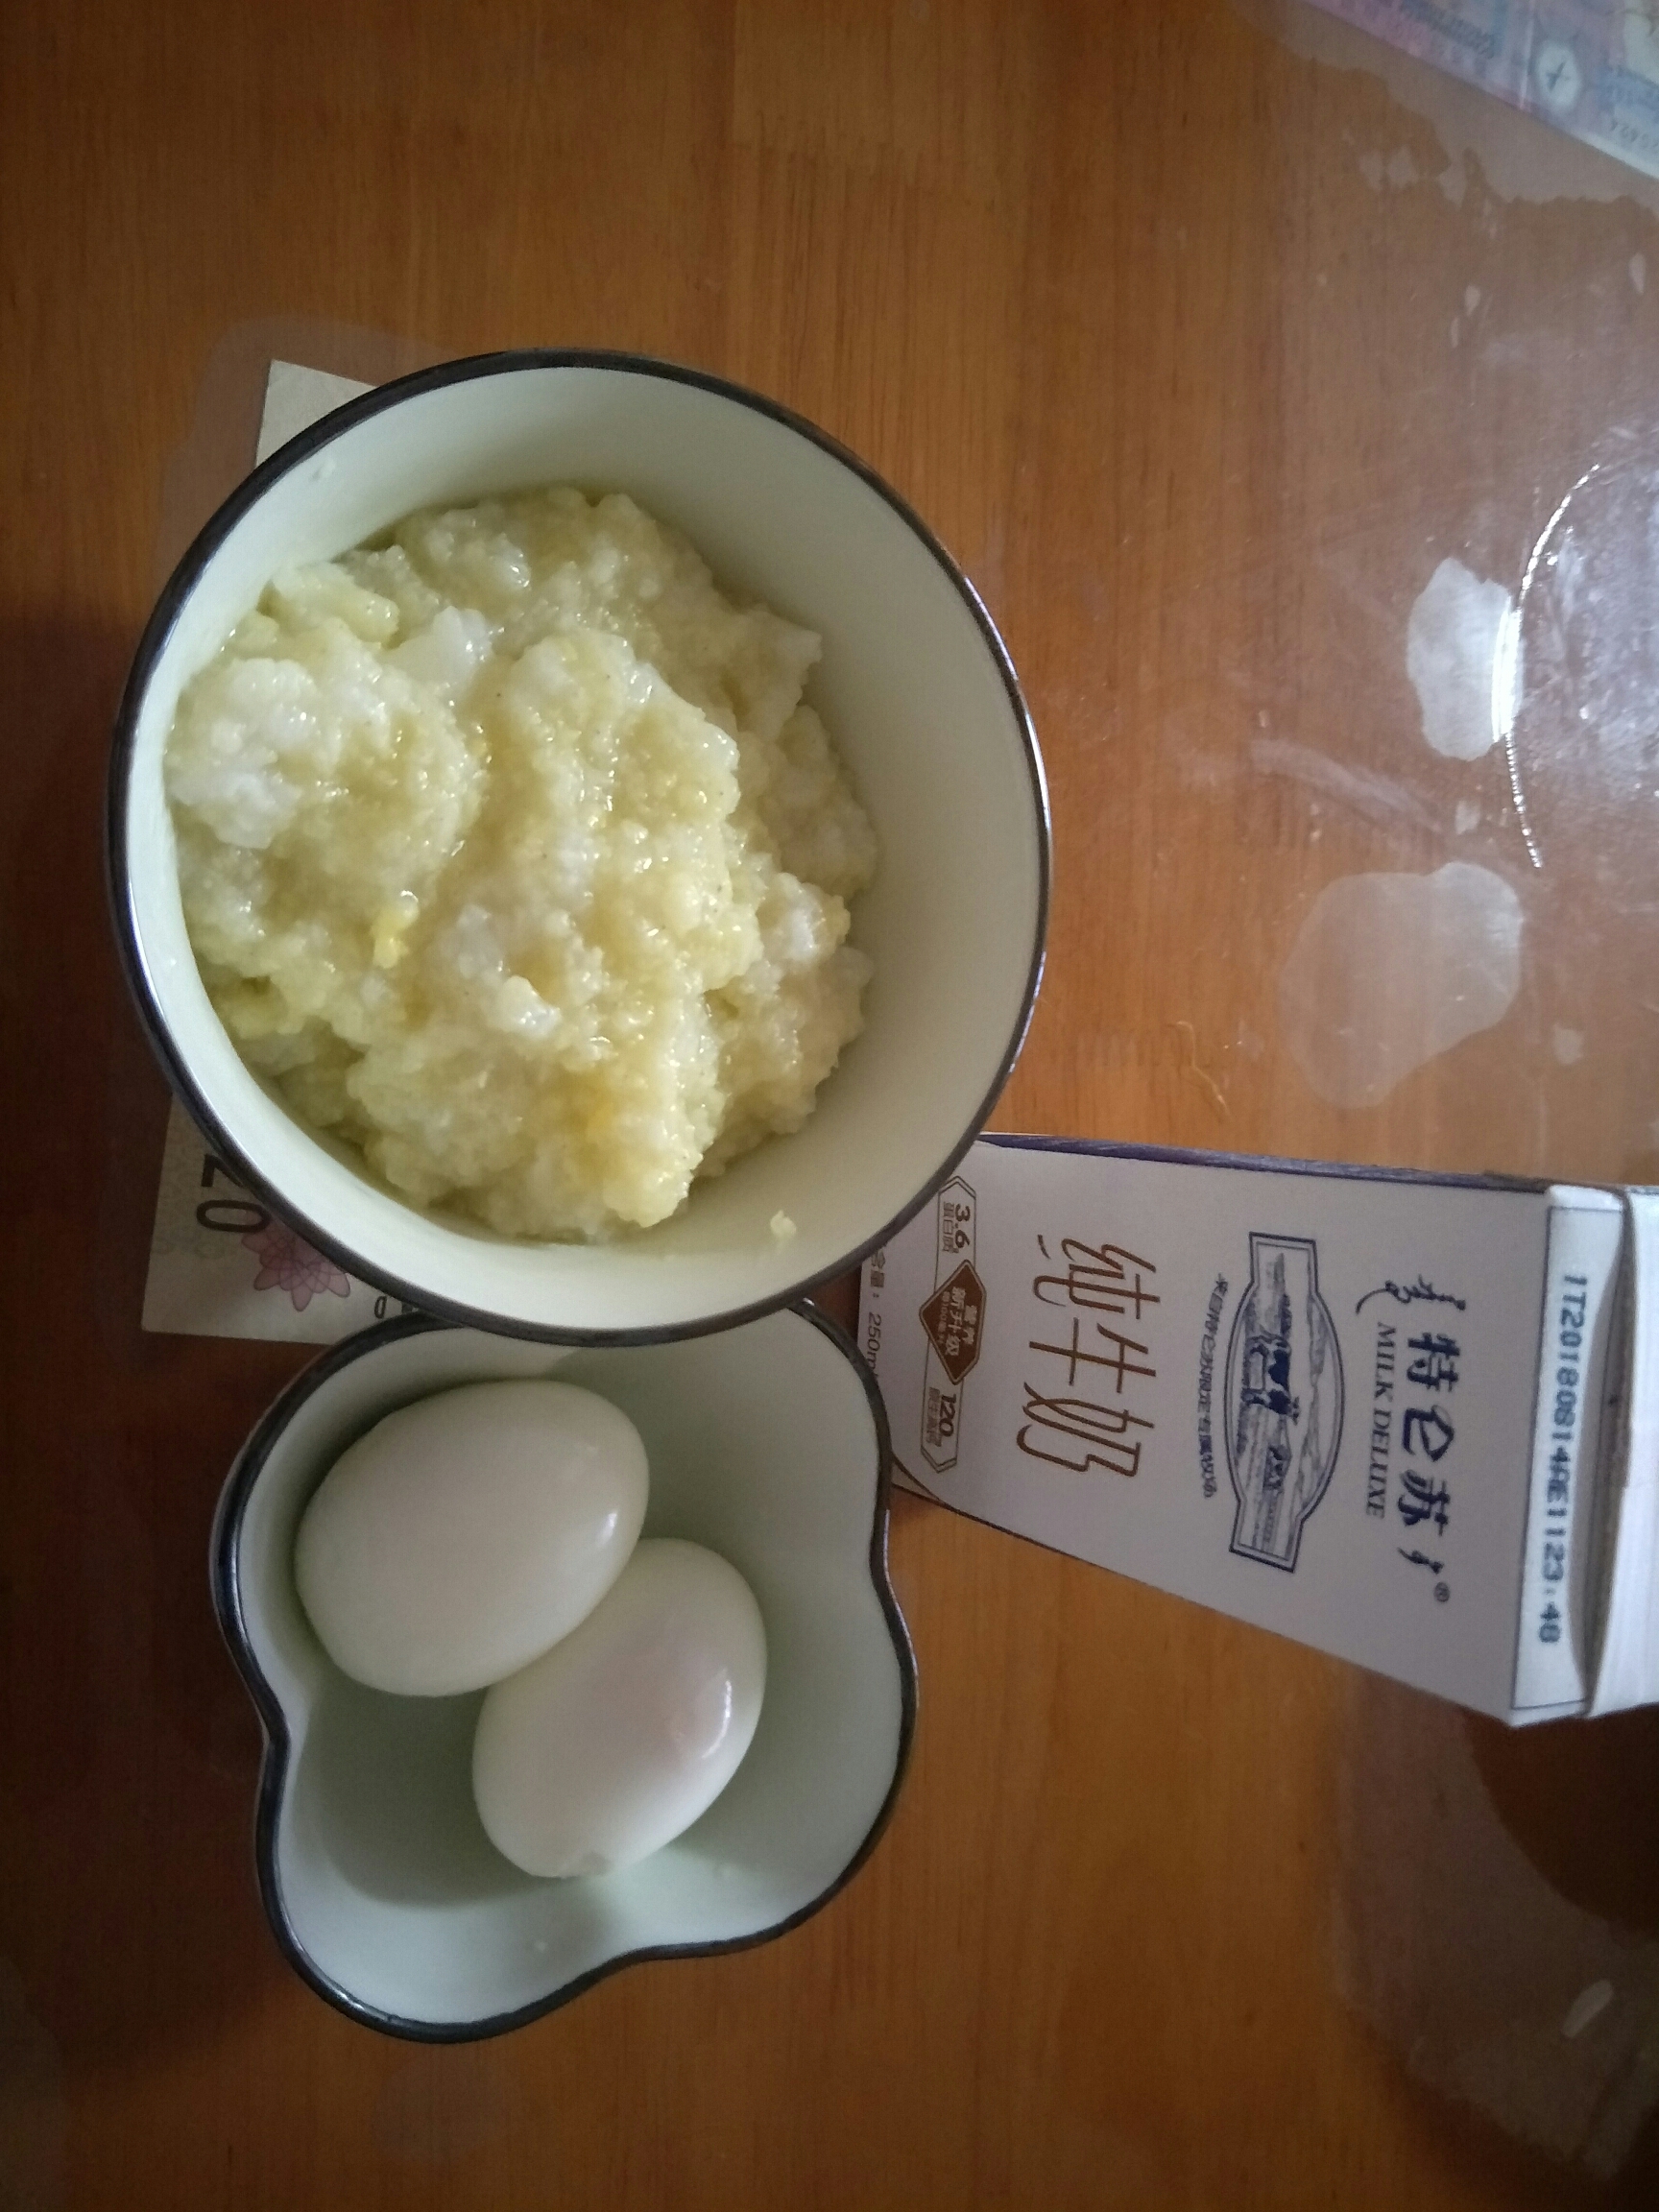 打卡~ 早餐:两颗水煮蛋 纯牛奶 小半碗小米粥